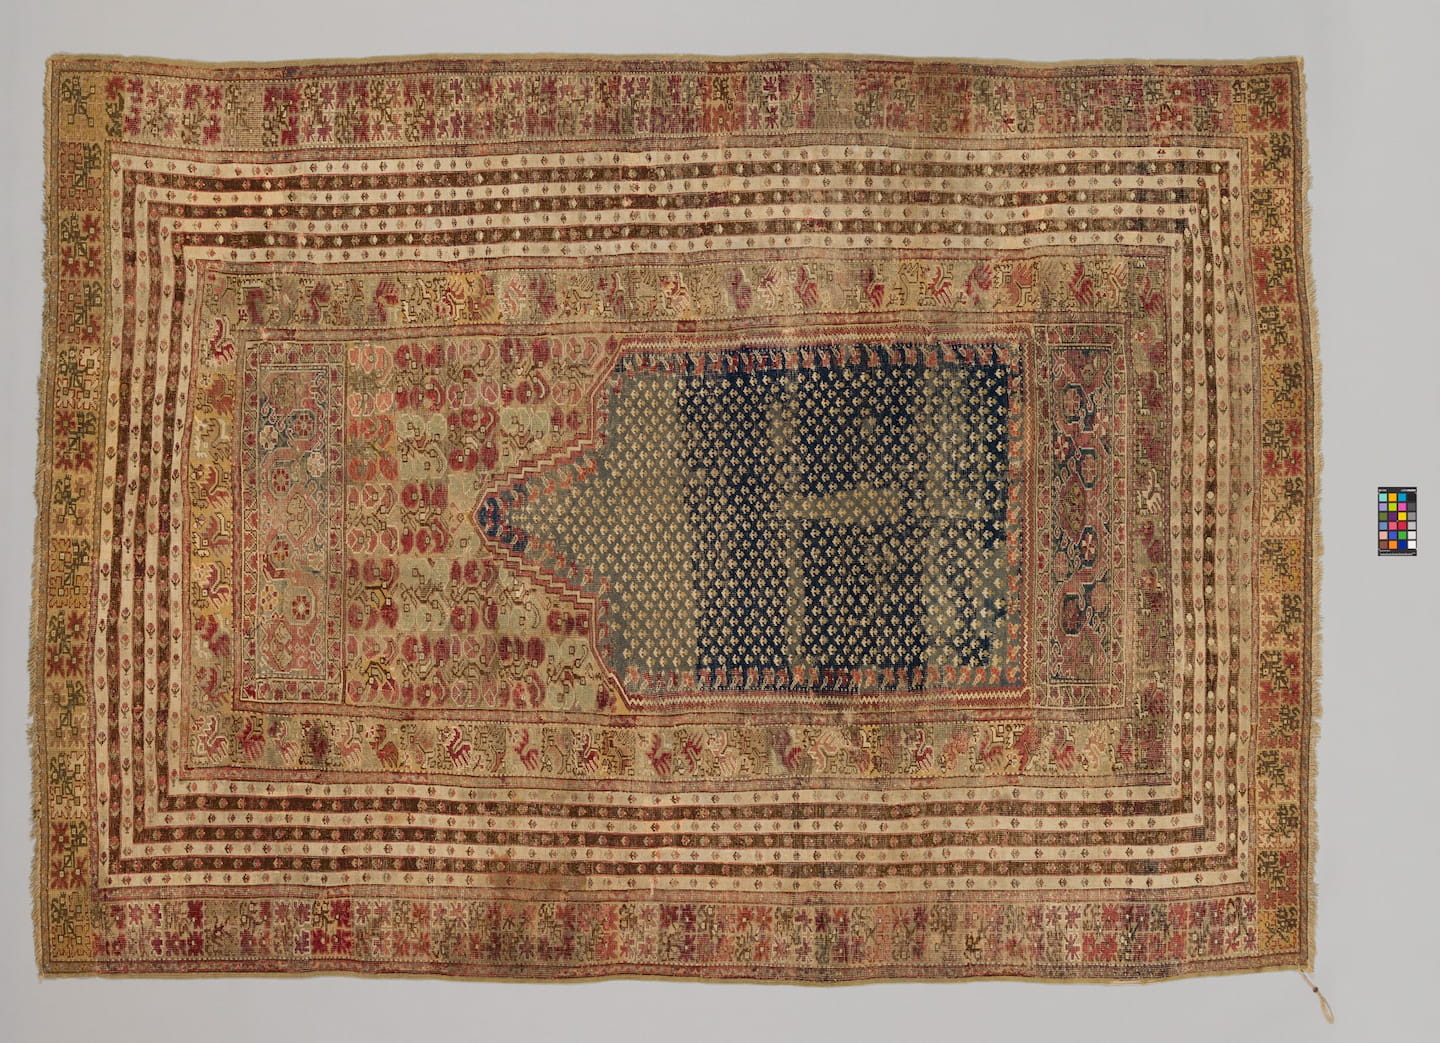 TAPIS À DÉCOR DE NICHE Turquie 1850-1900 Laine et coton Musée Bargoin, Clermont Auvergne Métropole © Florent Giffard